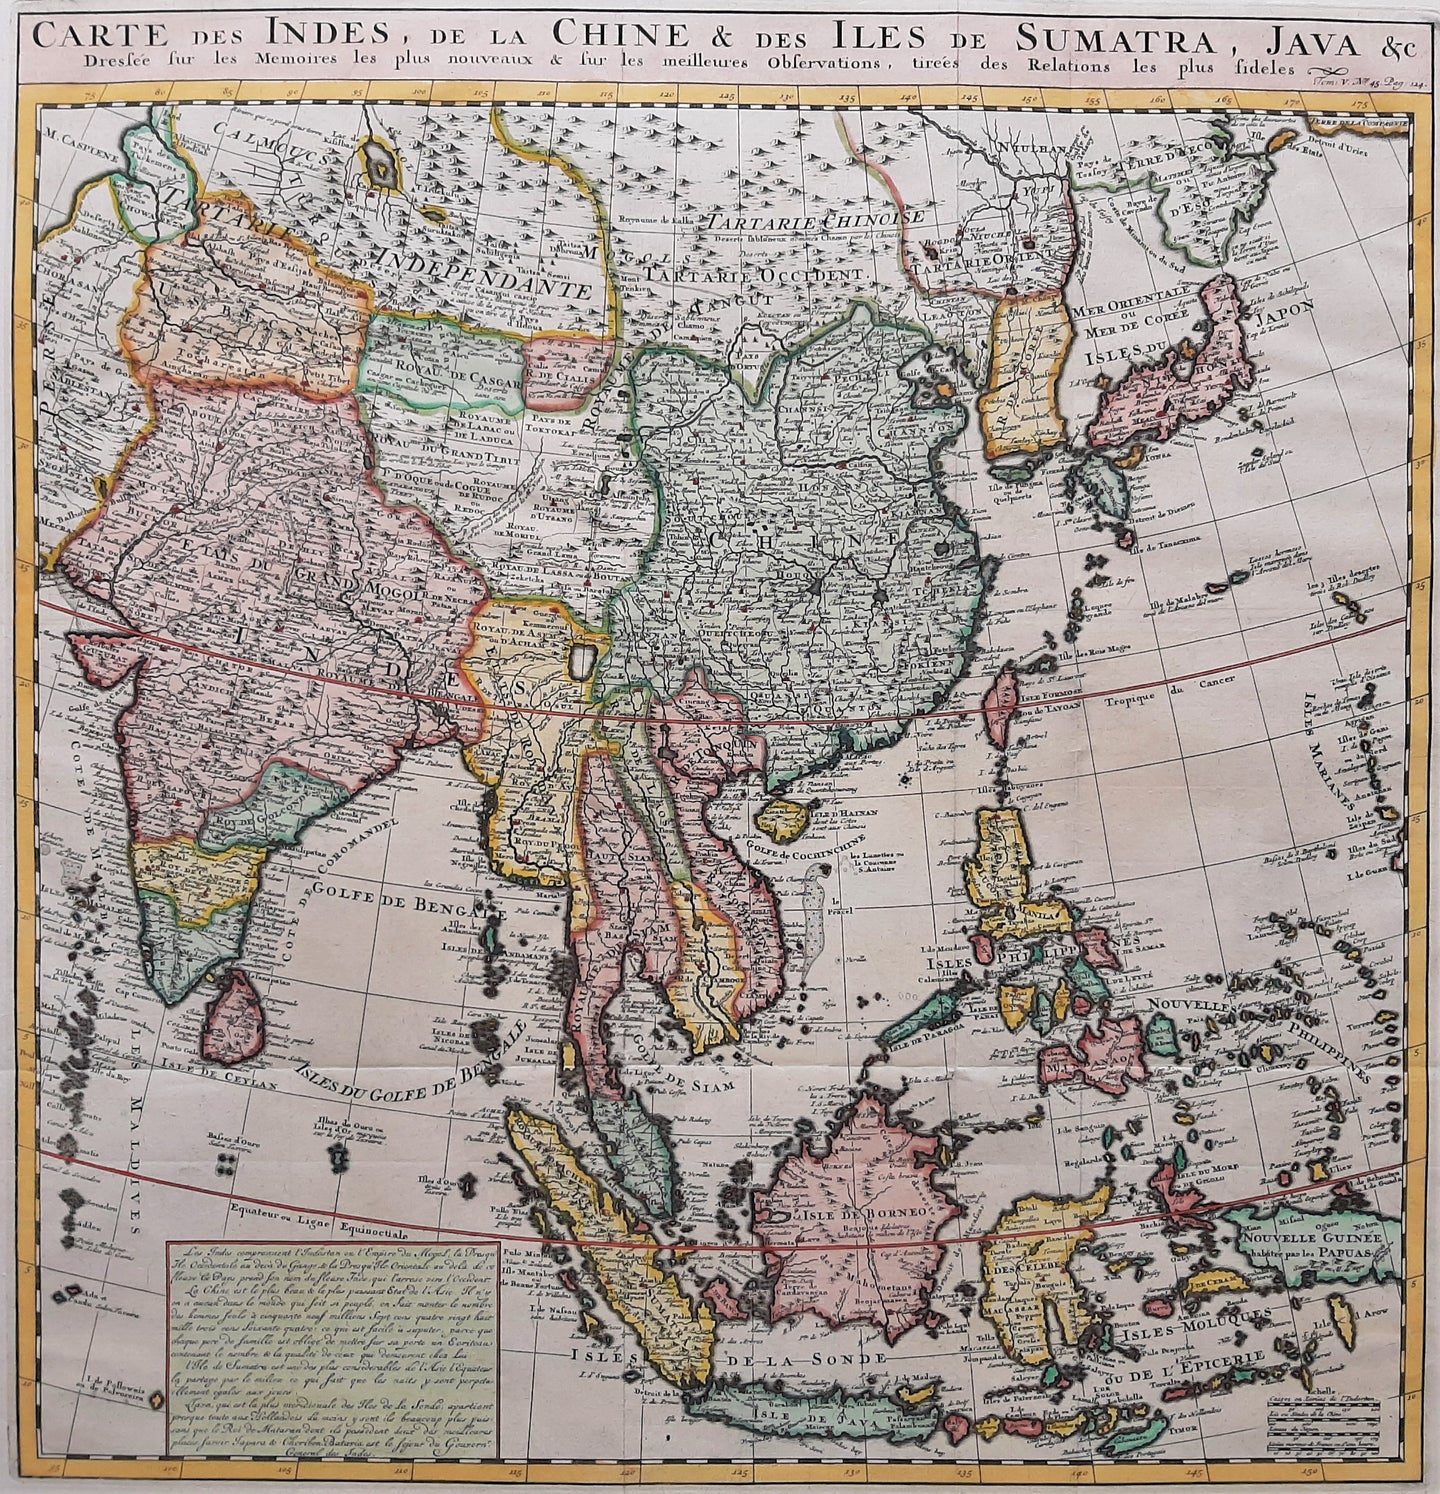 Zuidoost-Azië India China Japan - HA Chatelain - 1718